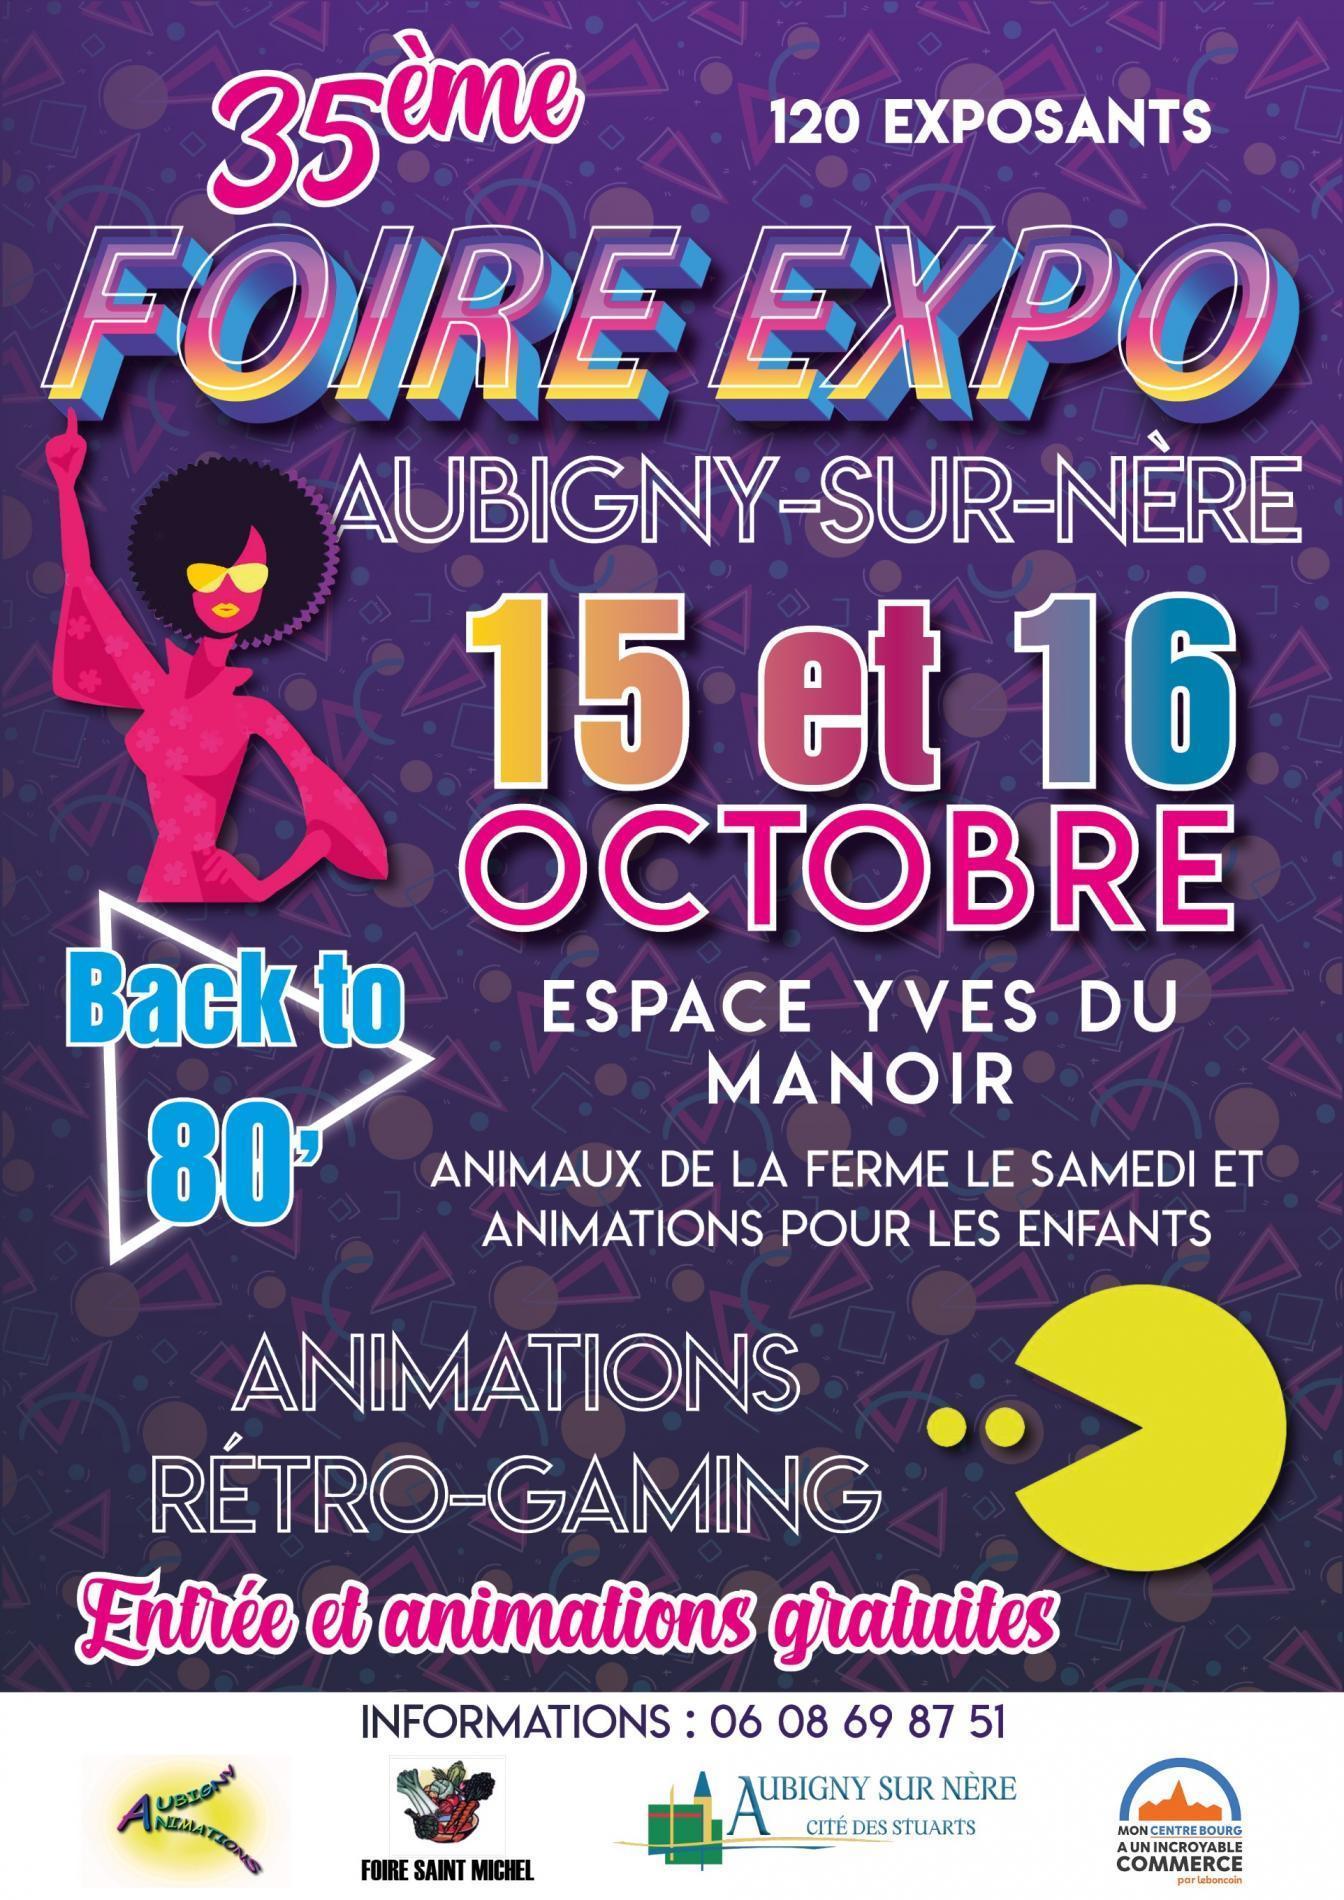 35ème FOIRE EXPO " Back to 80' "